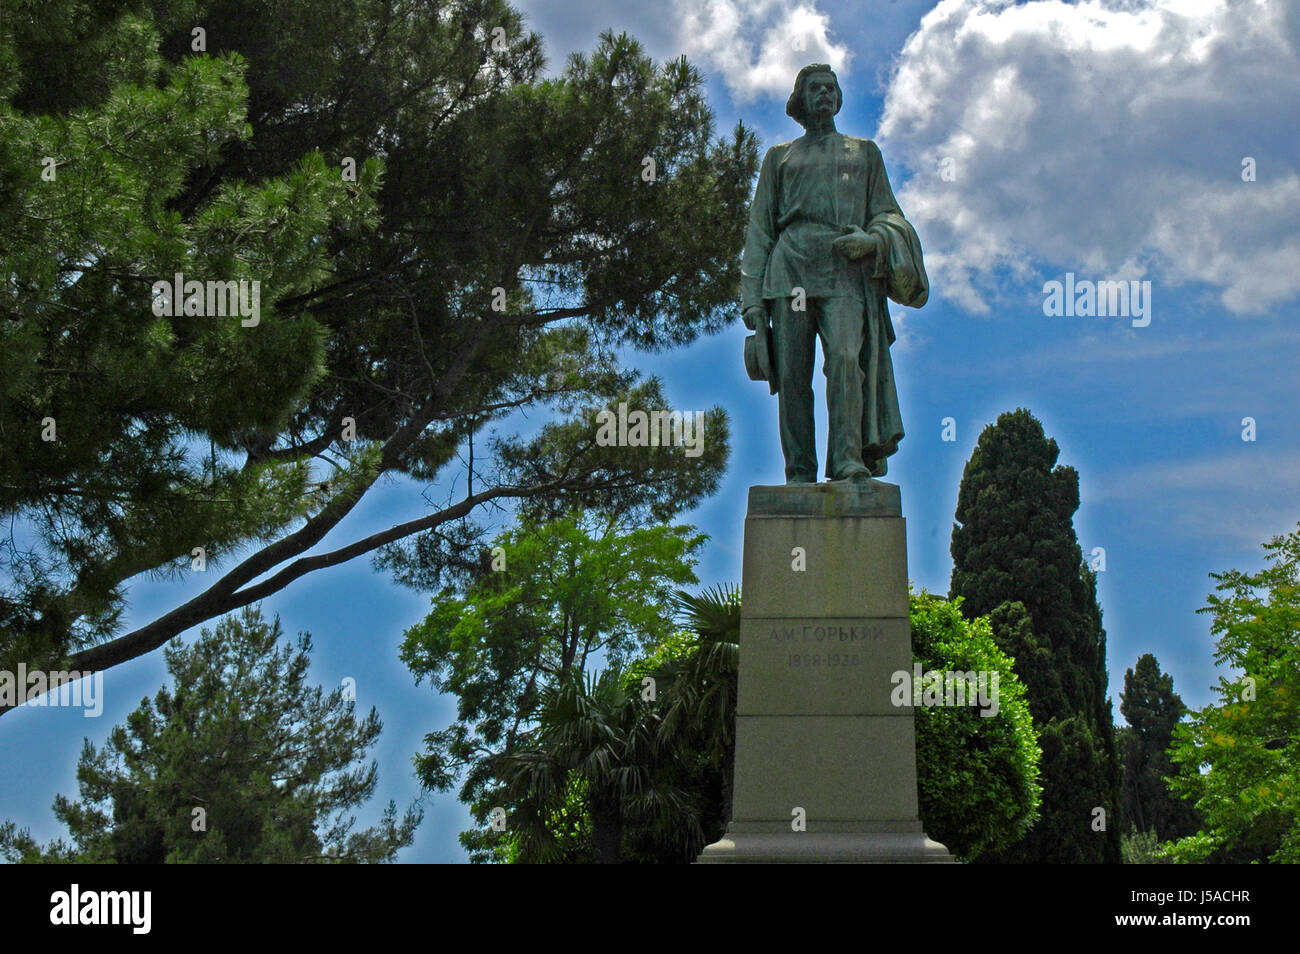 Stadt Stadt Denkmal Baum Bäume Pflanzen grünen Statue Europa Ost Europa Autor Stockfoto